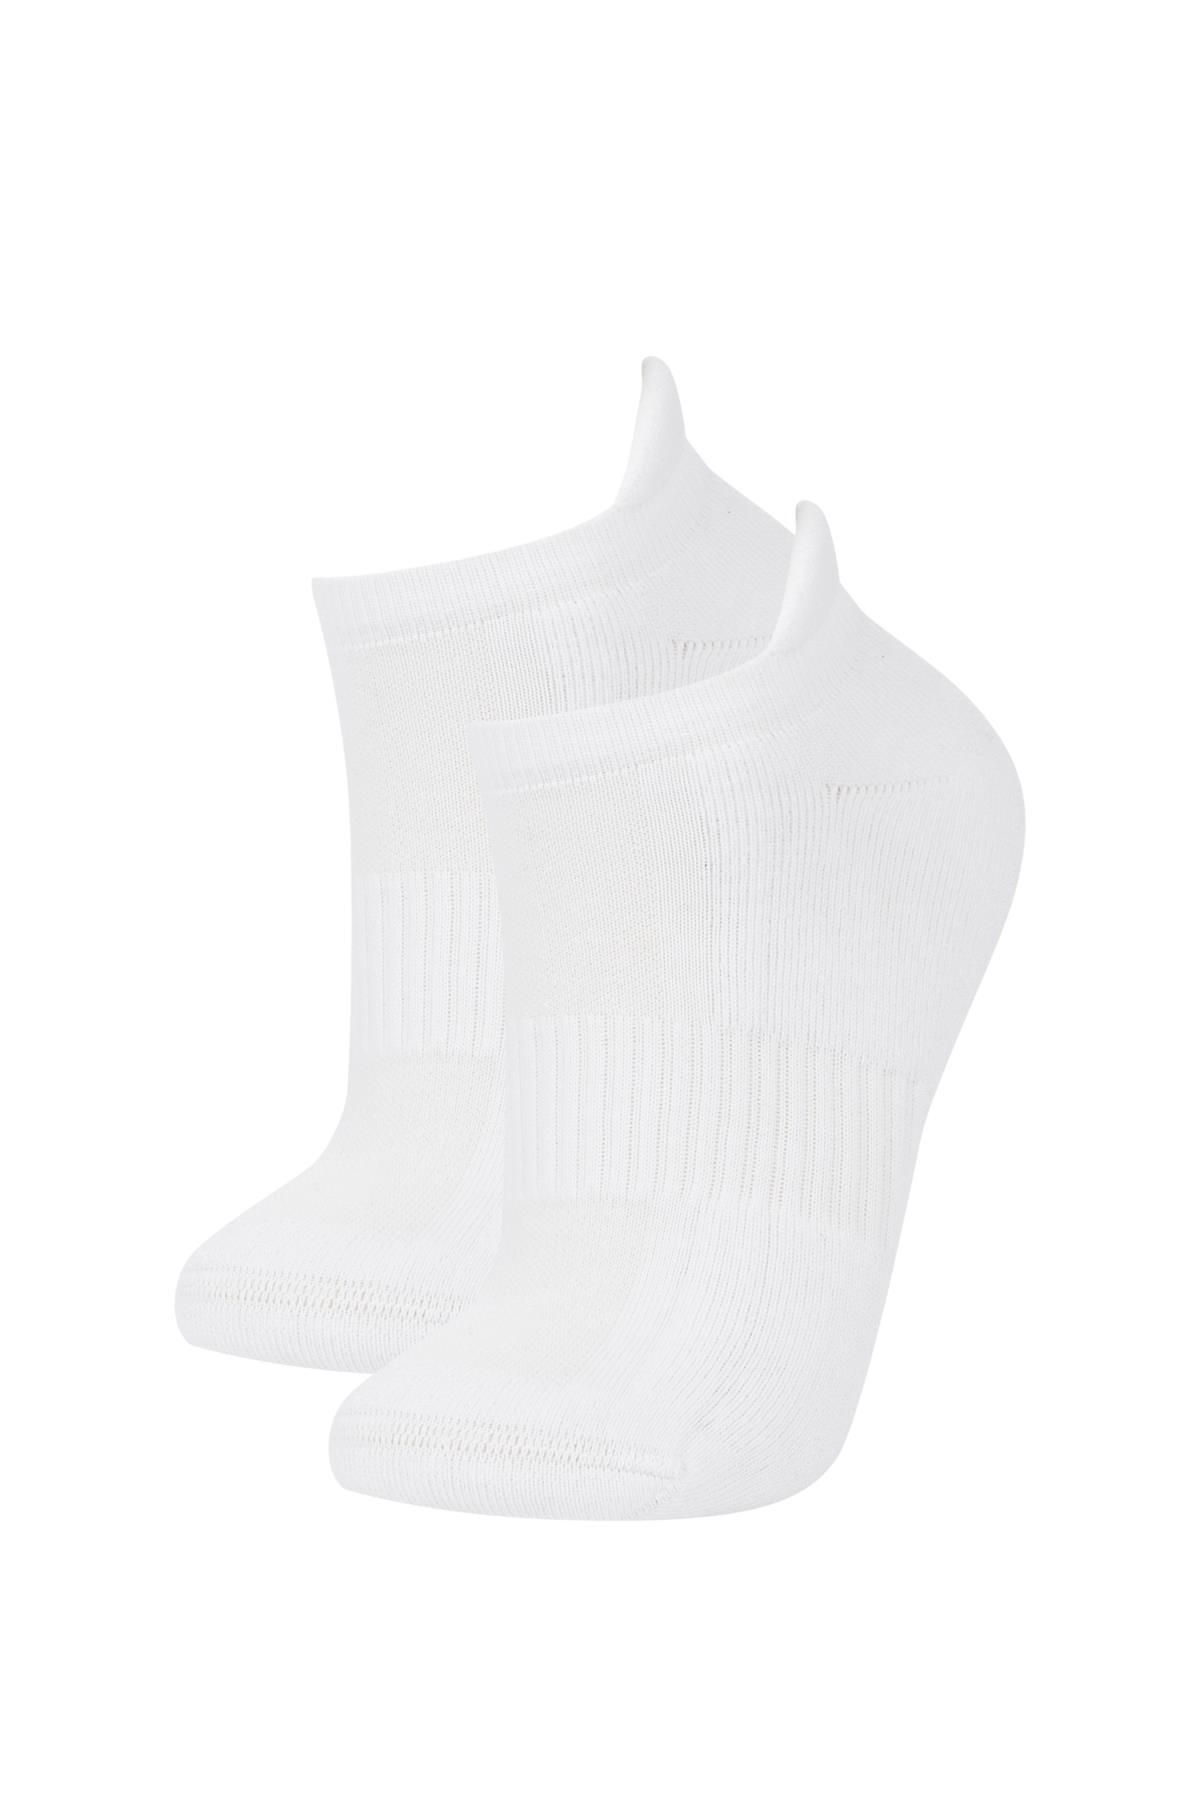 Defacto Kadın Basic Pamuklu 2'li Spor Kısa Havlu Çorap